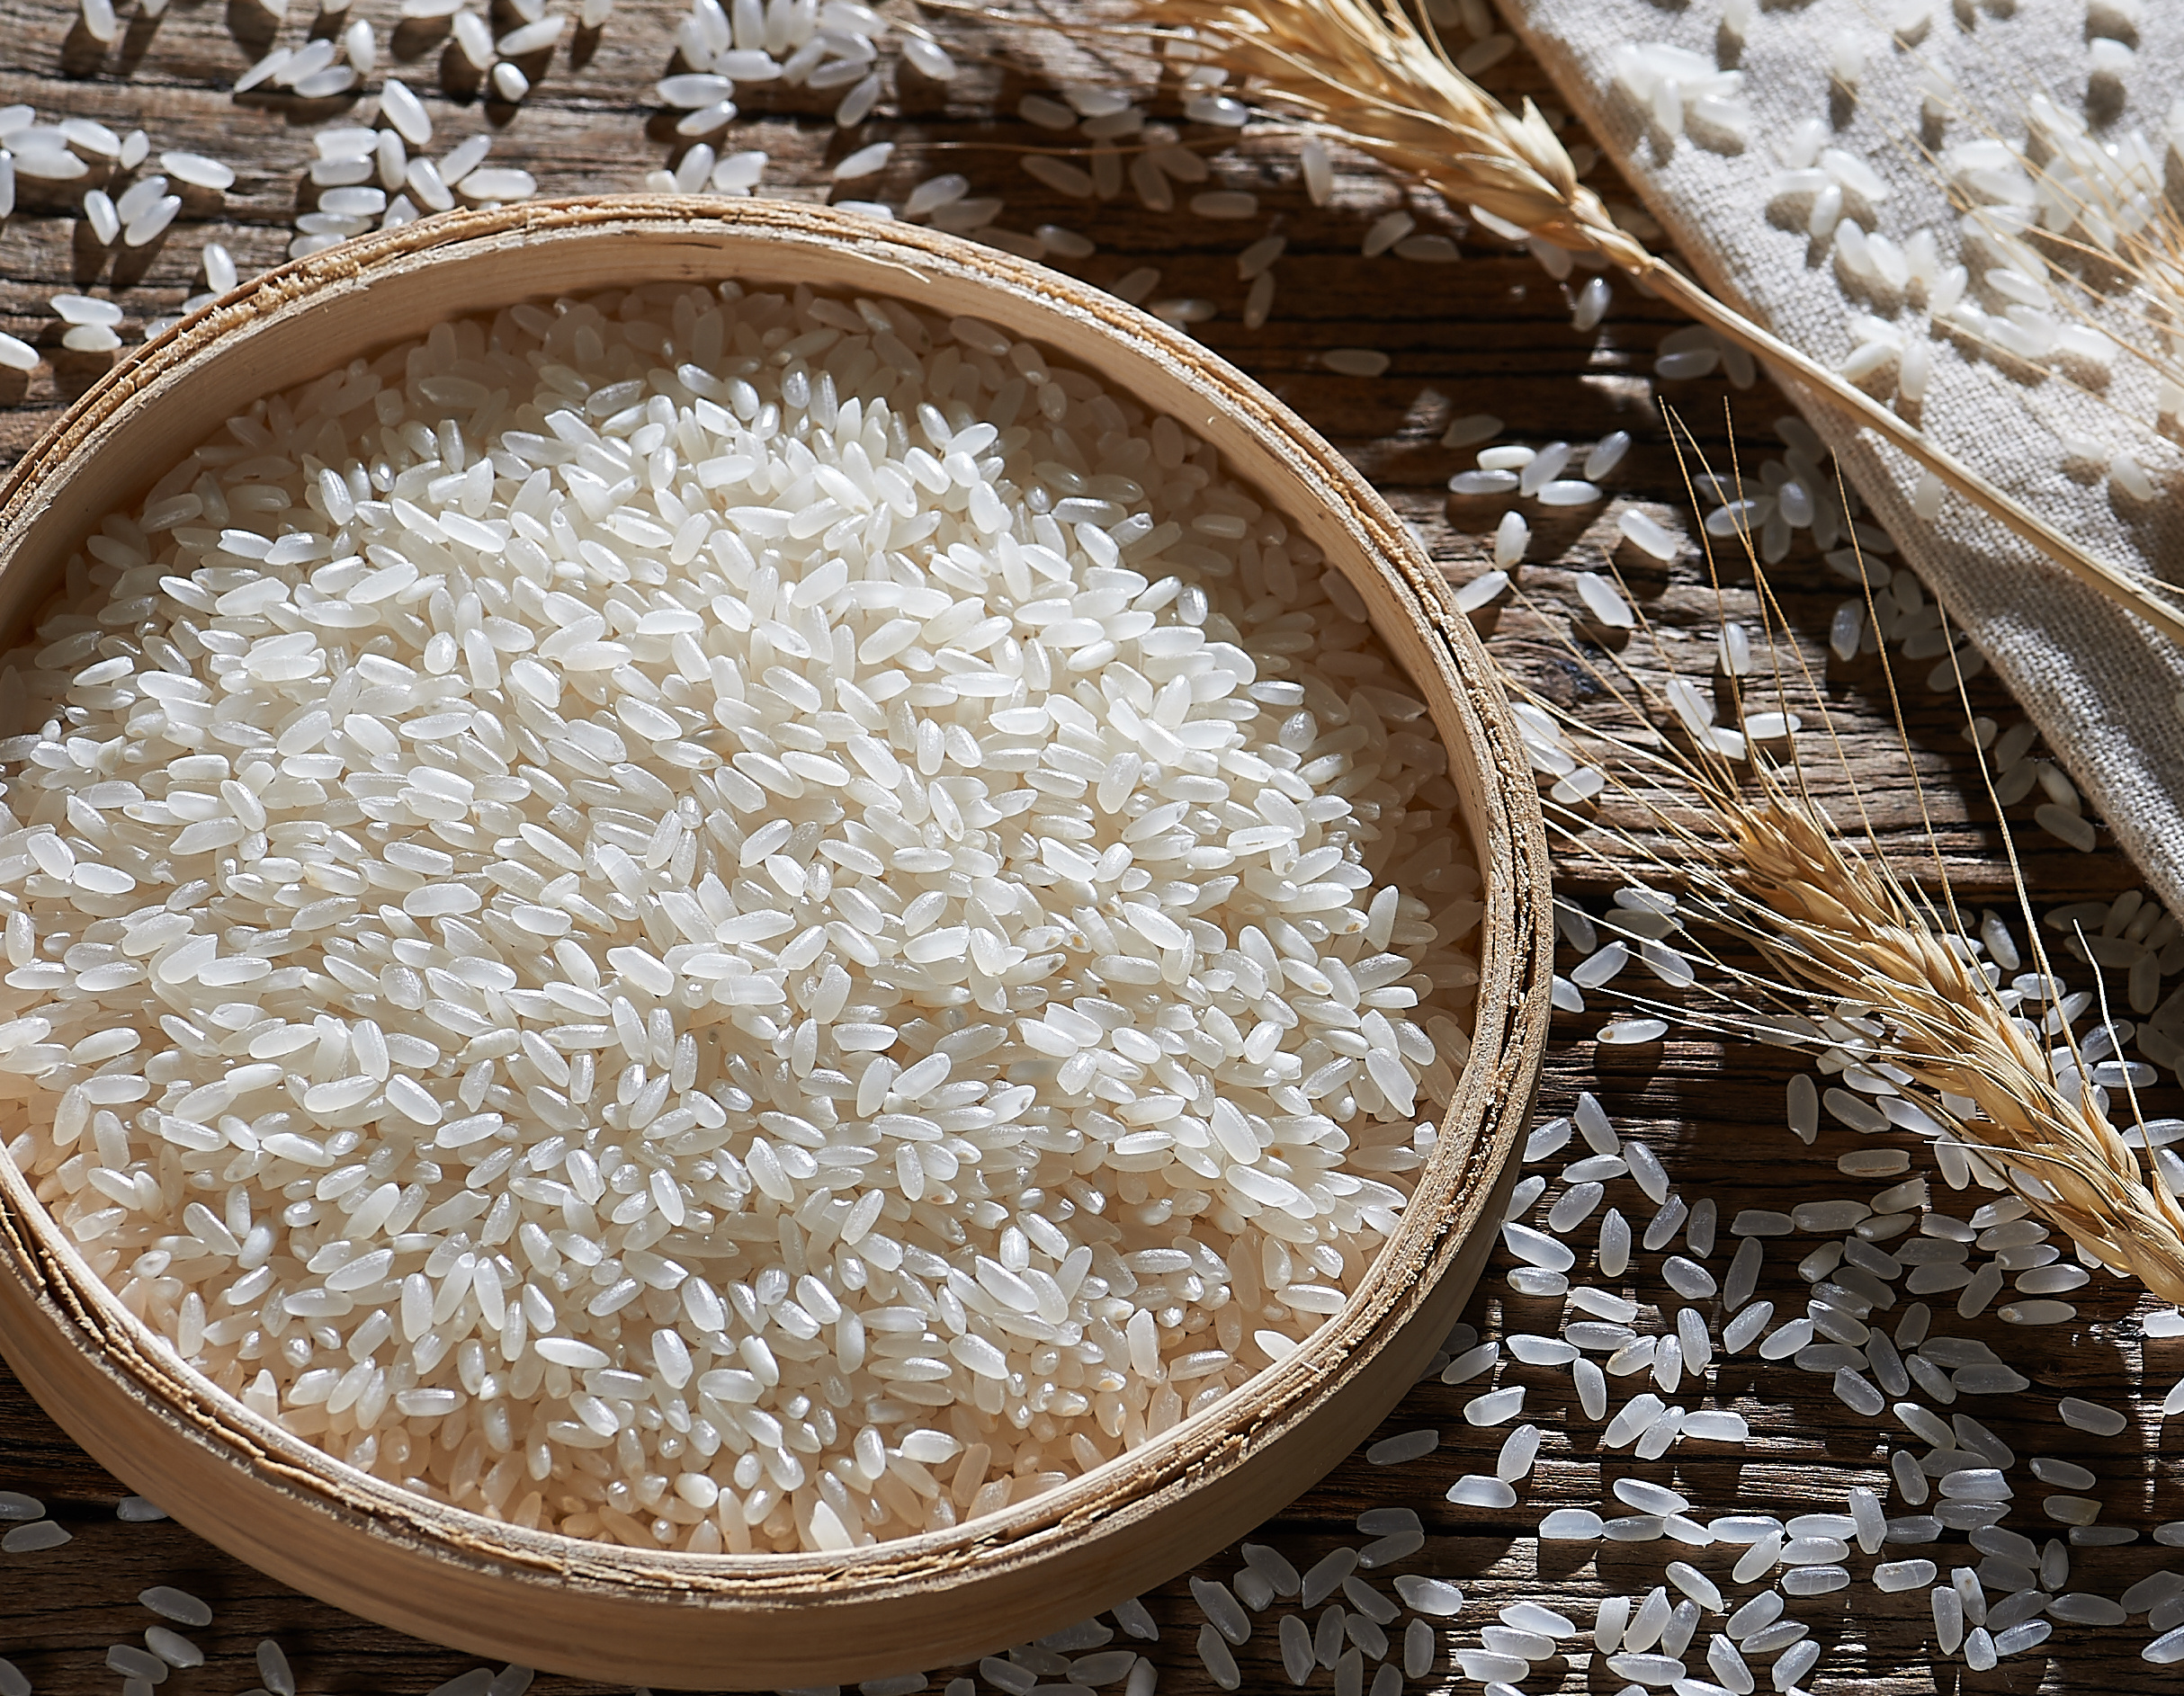 胚芽鲜米是什么米？